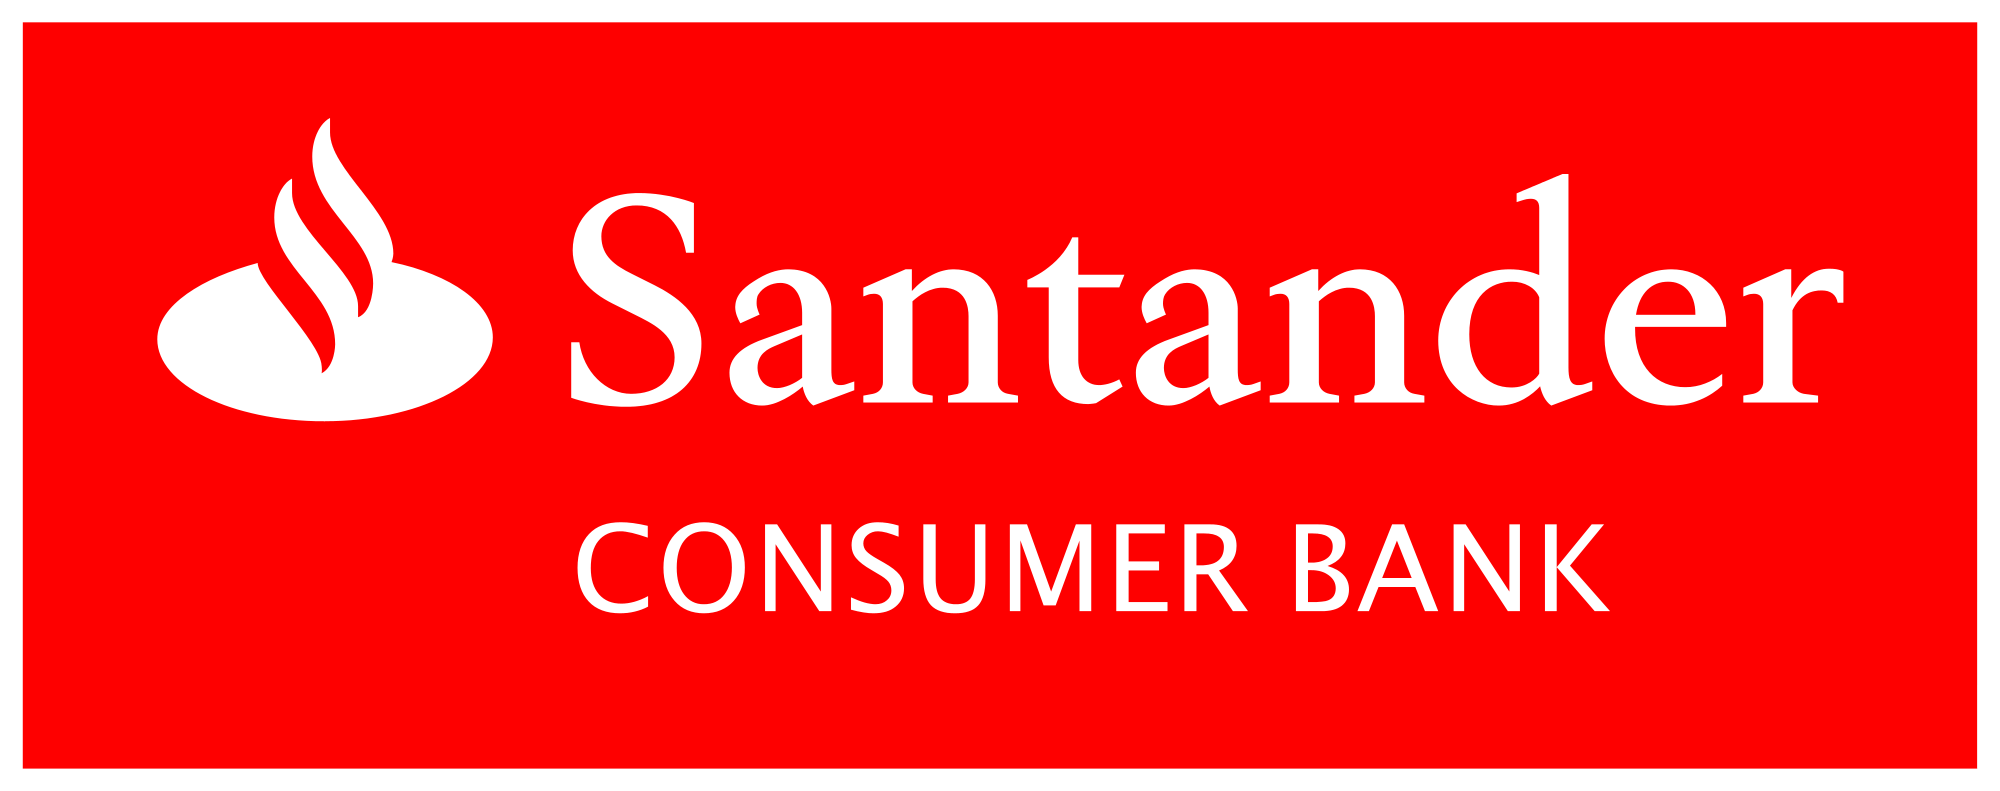 Santander Logo - Santander Consumer Bank Mönchengladbach logo.svg